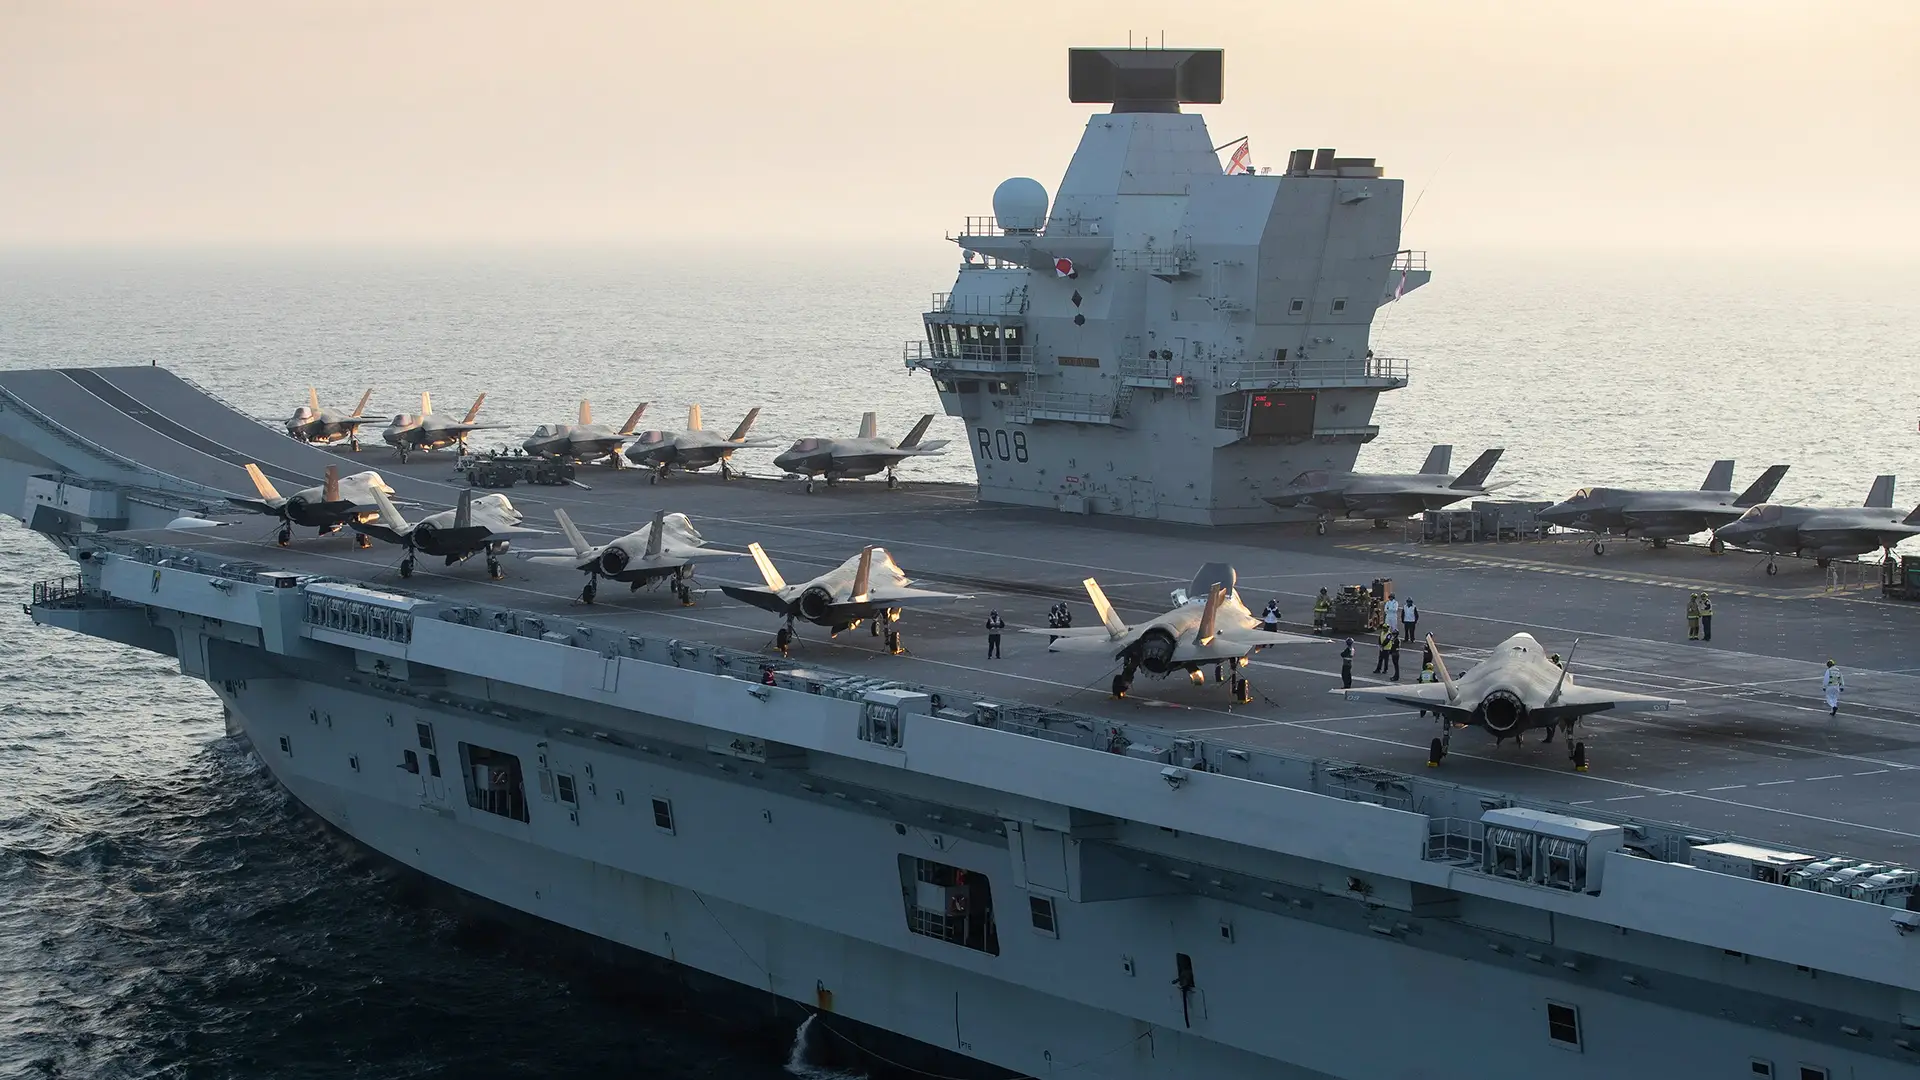 Королівські ВМС Великої Британії хочуть обладнати авіаносці Queen Elizabeth катапультами й аерофінішерами для безпілотників